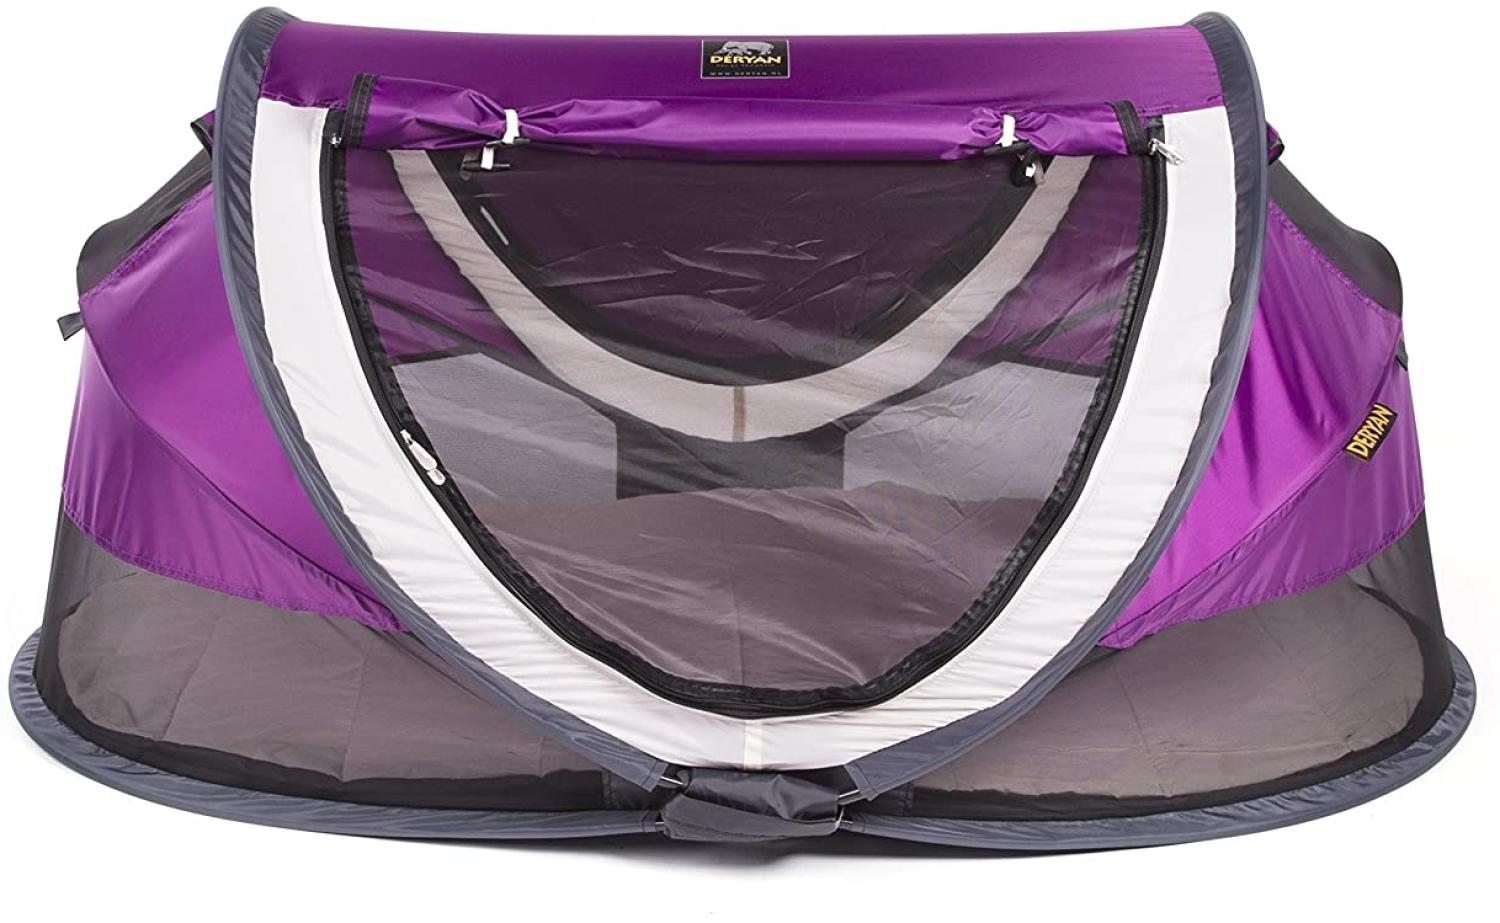 Deryan Reisebett/Travel-cot Peuter Reisebettzelt inklusive Schlafmatte, selbstaufblasbarer Luftmatratze und Tragetasche mit Pop-Up innerhalb 2 Sekunden aufgebaut, purple Bild 1